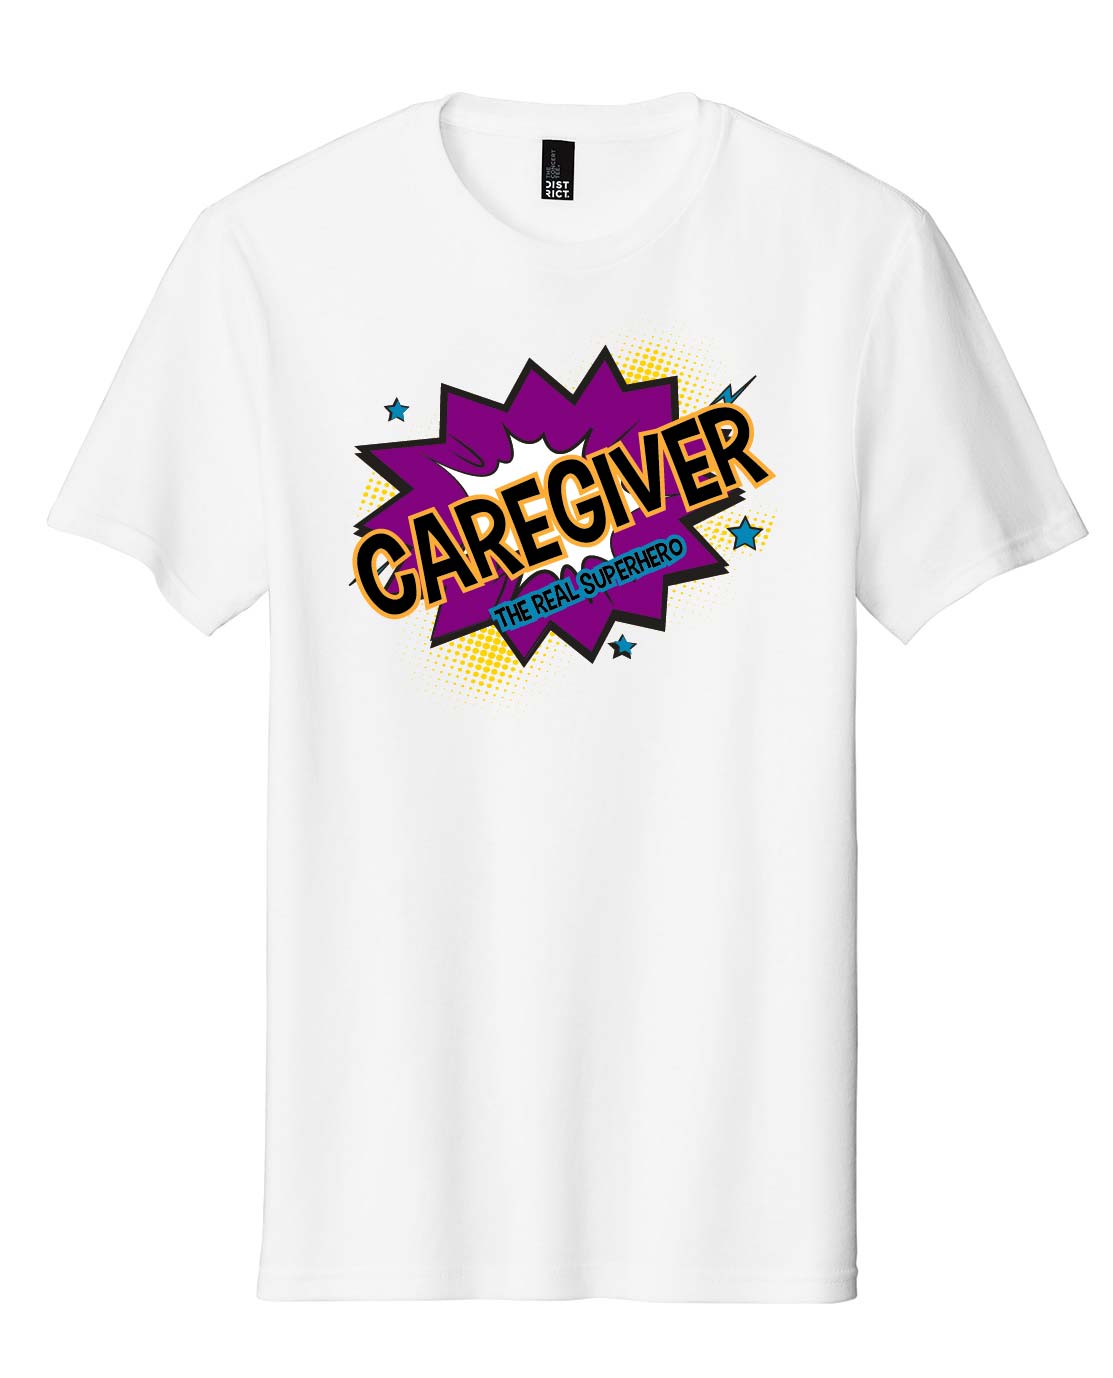 Caregiver Superhero Shirt